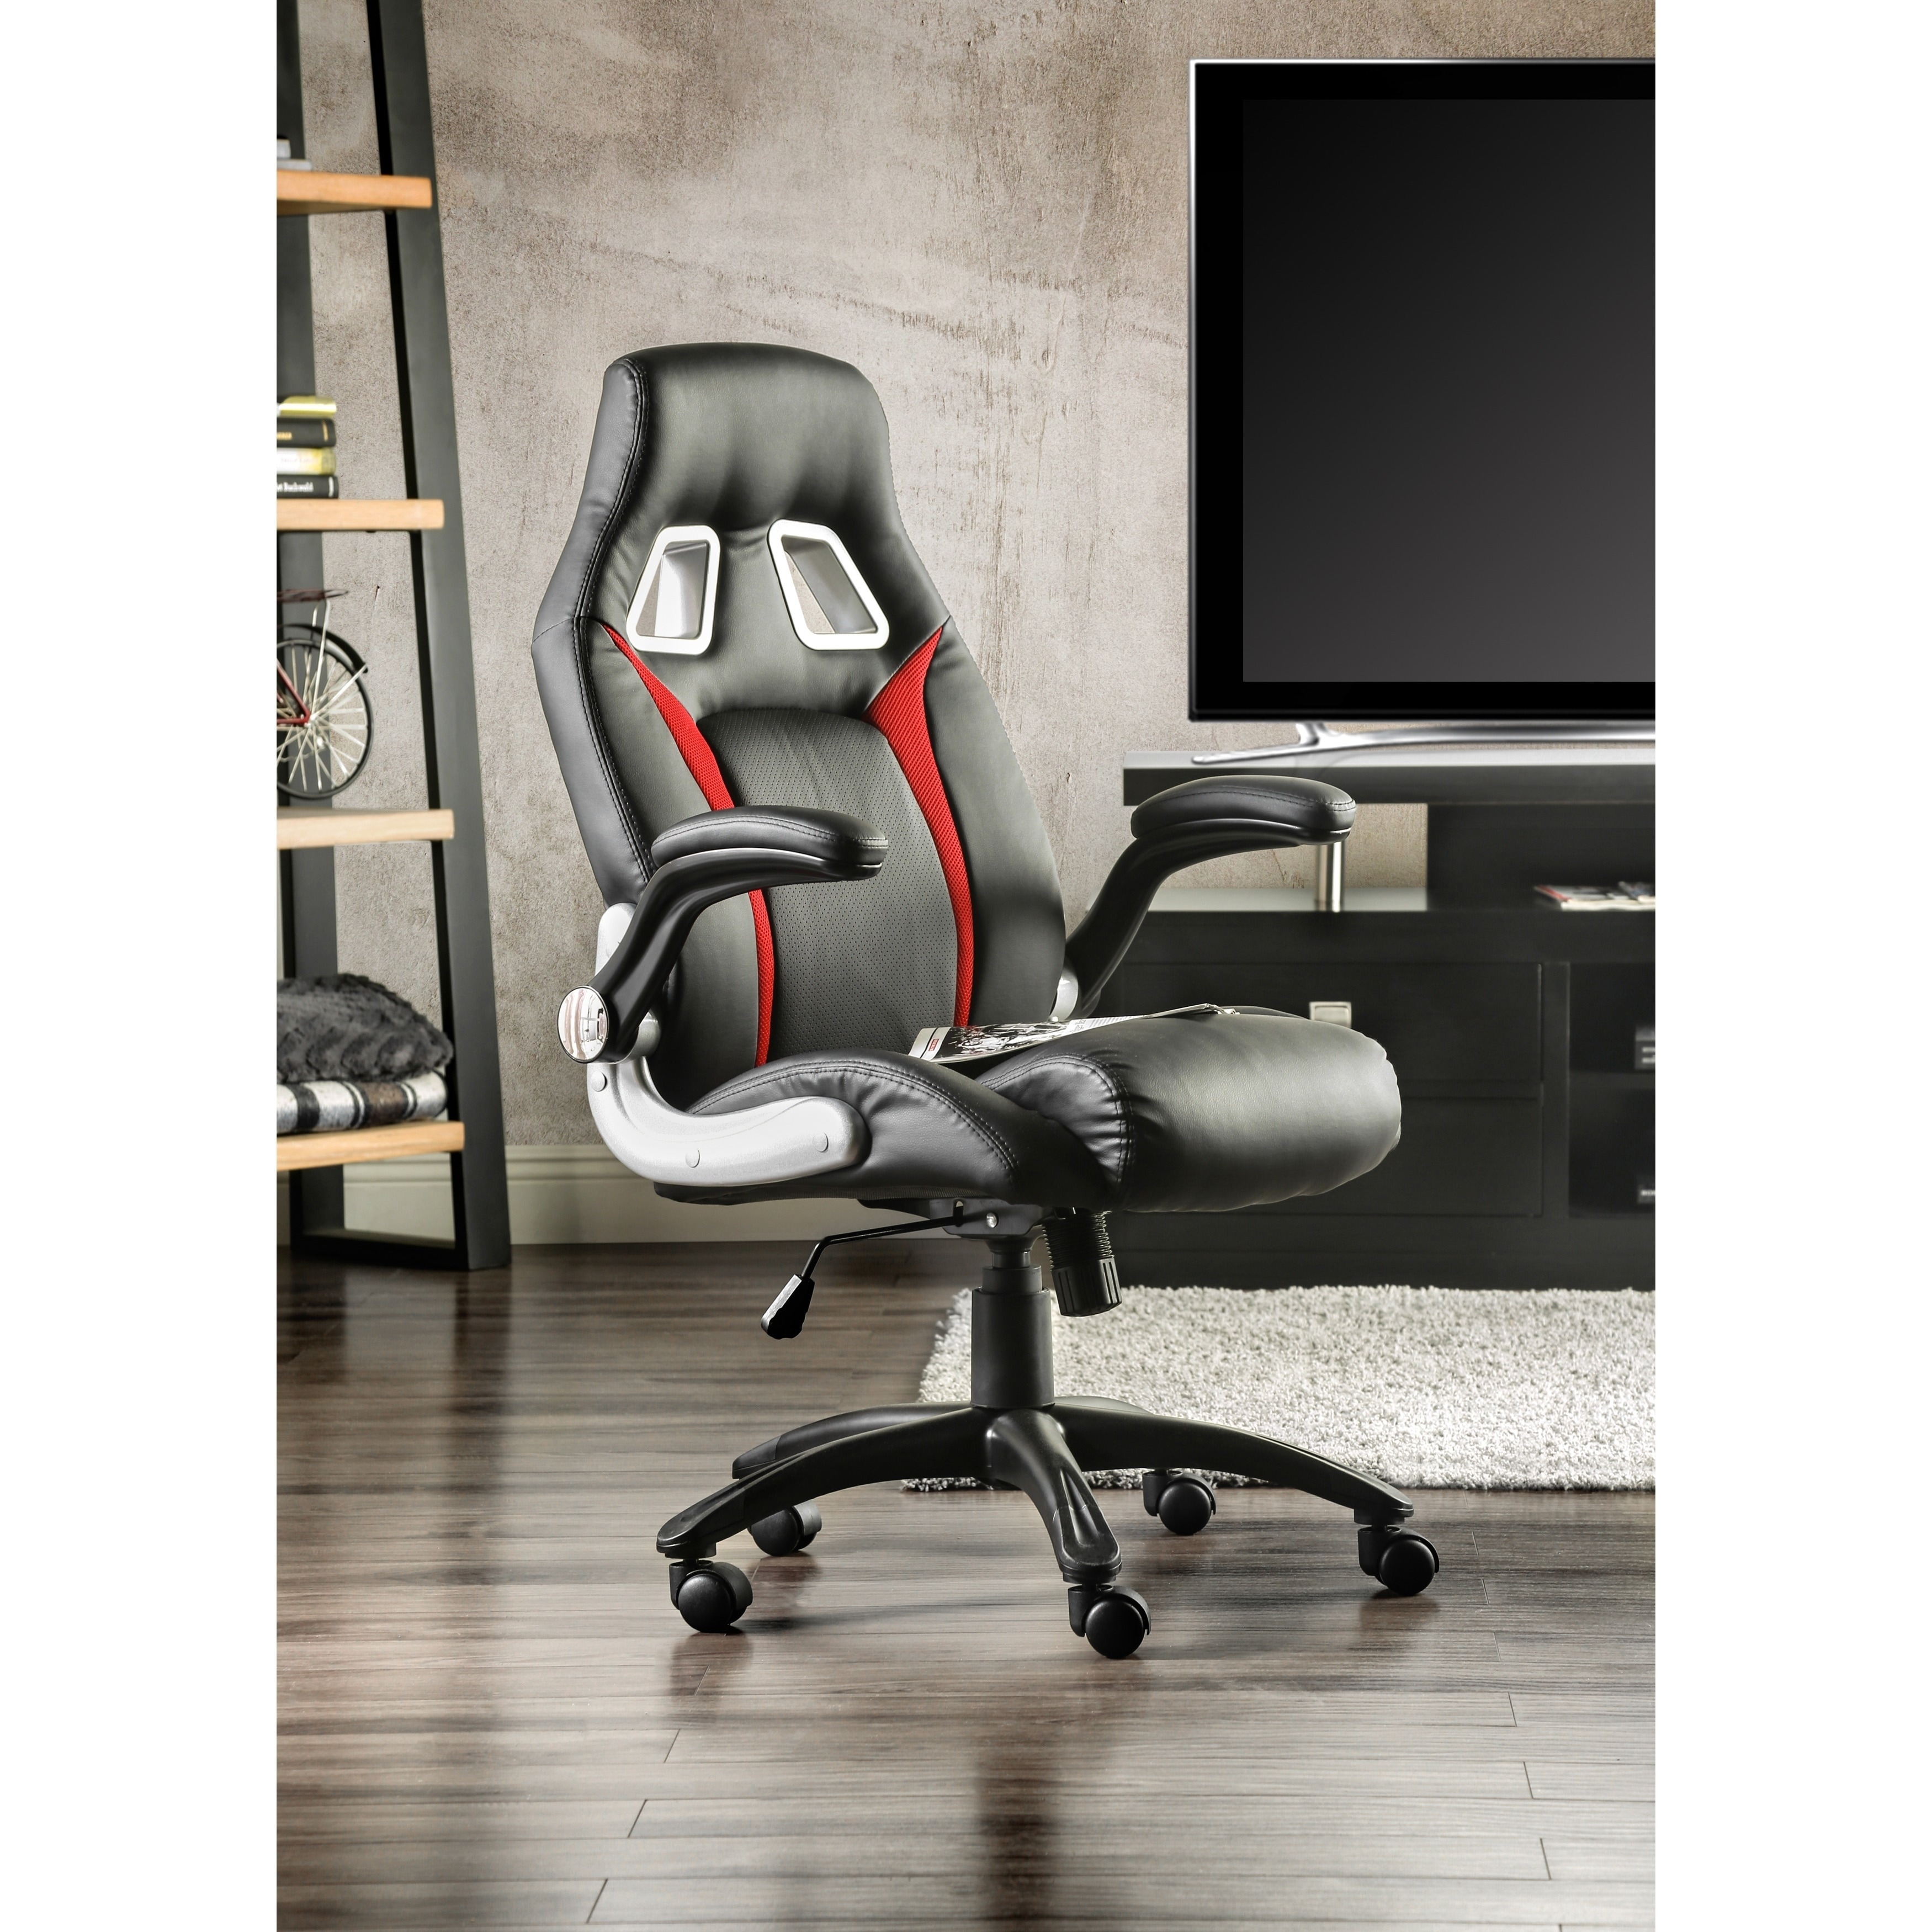 TrendSetter Chair Mats  Desk Chair Mats by